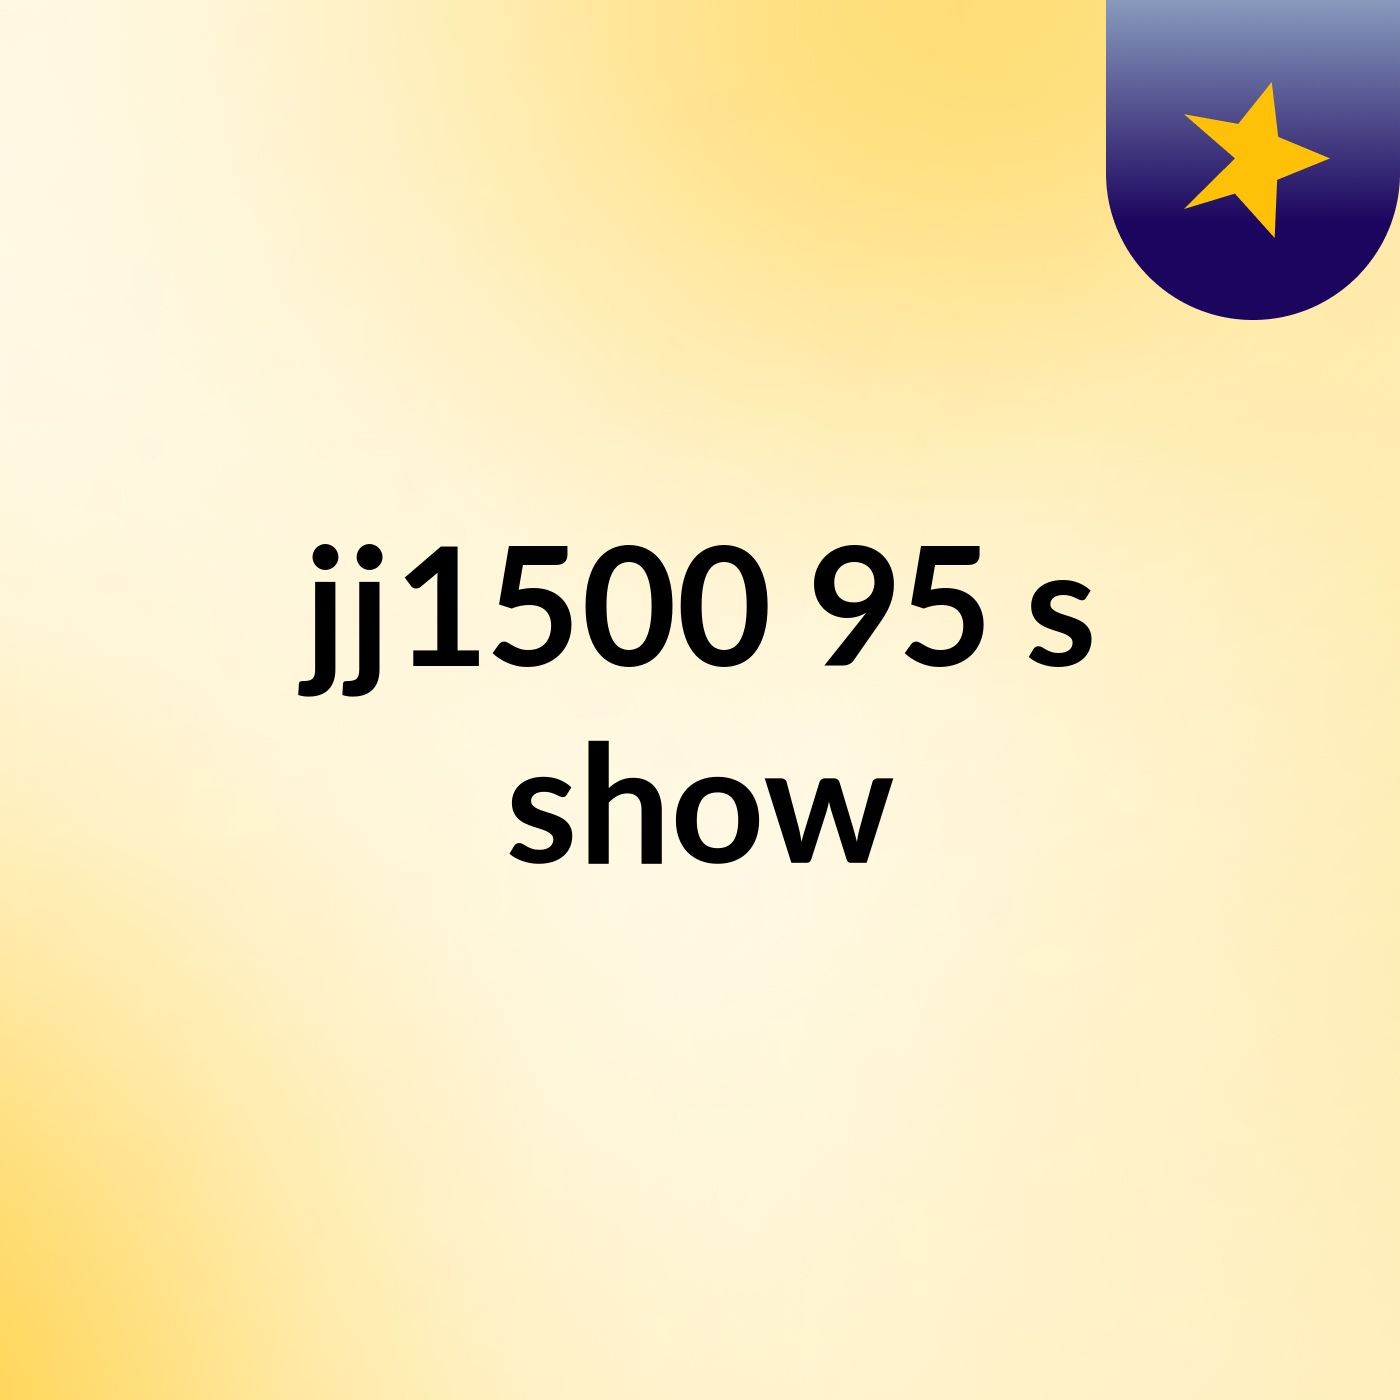 jj1500 95's show